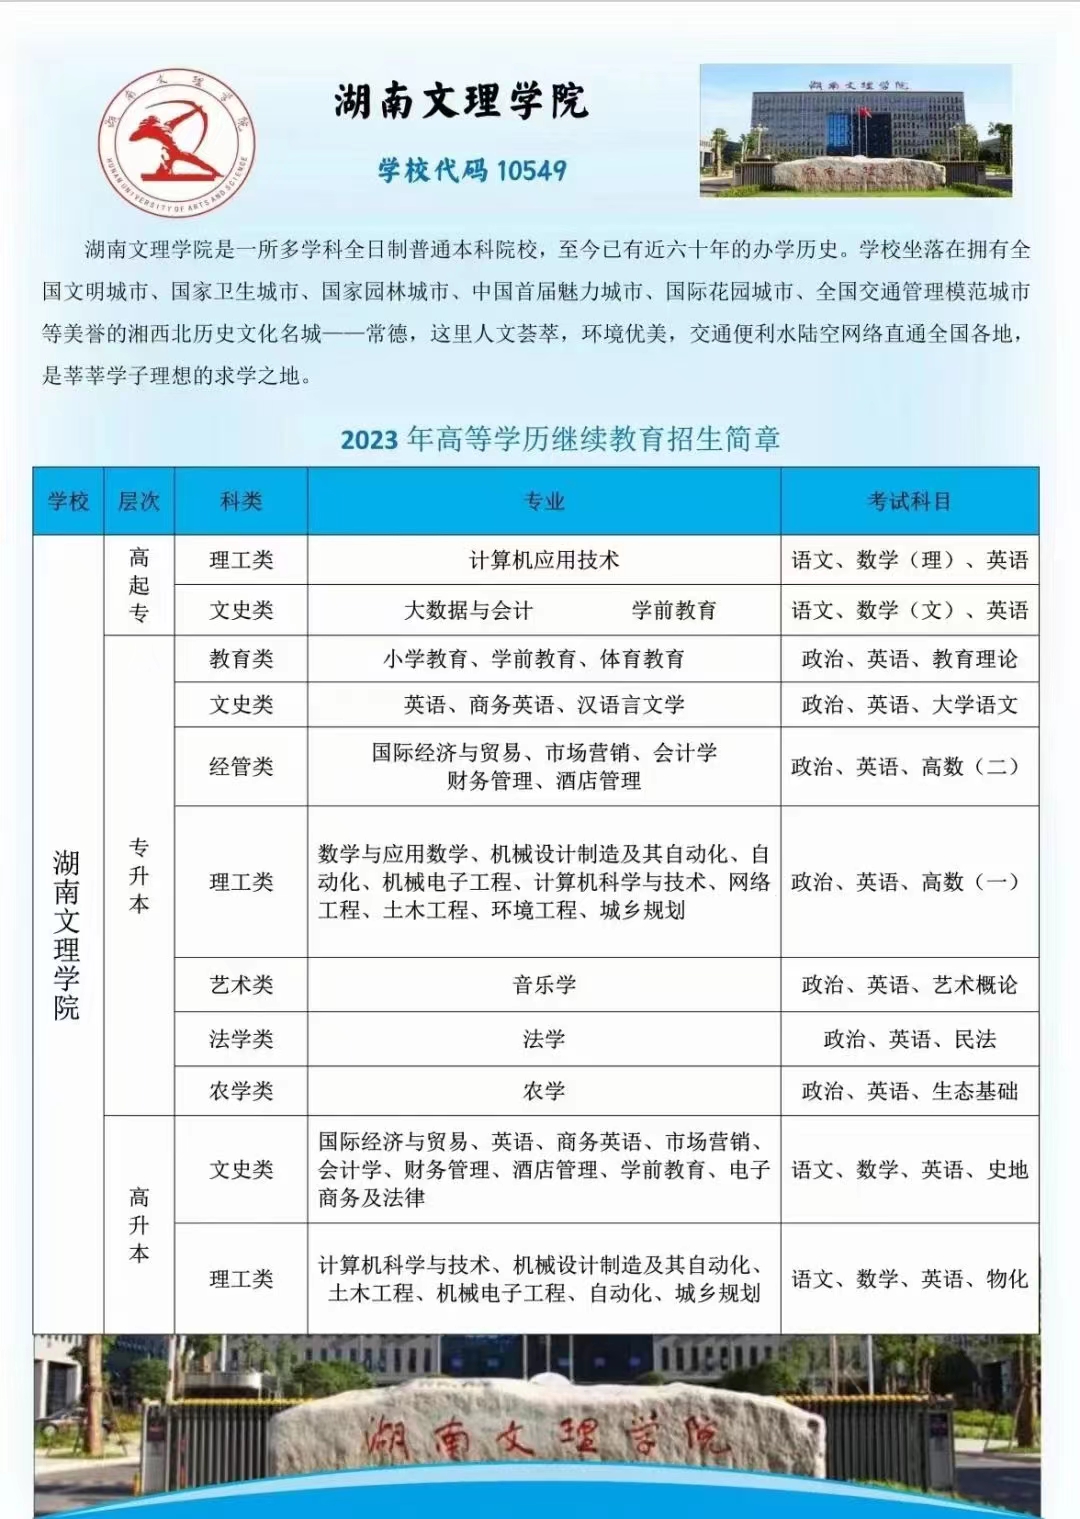 2023年湖南文理学院湖南成人高考招生简章